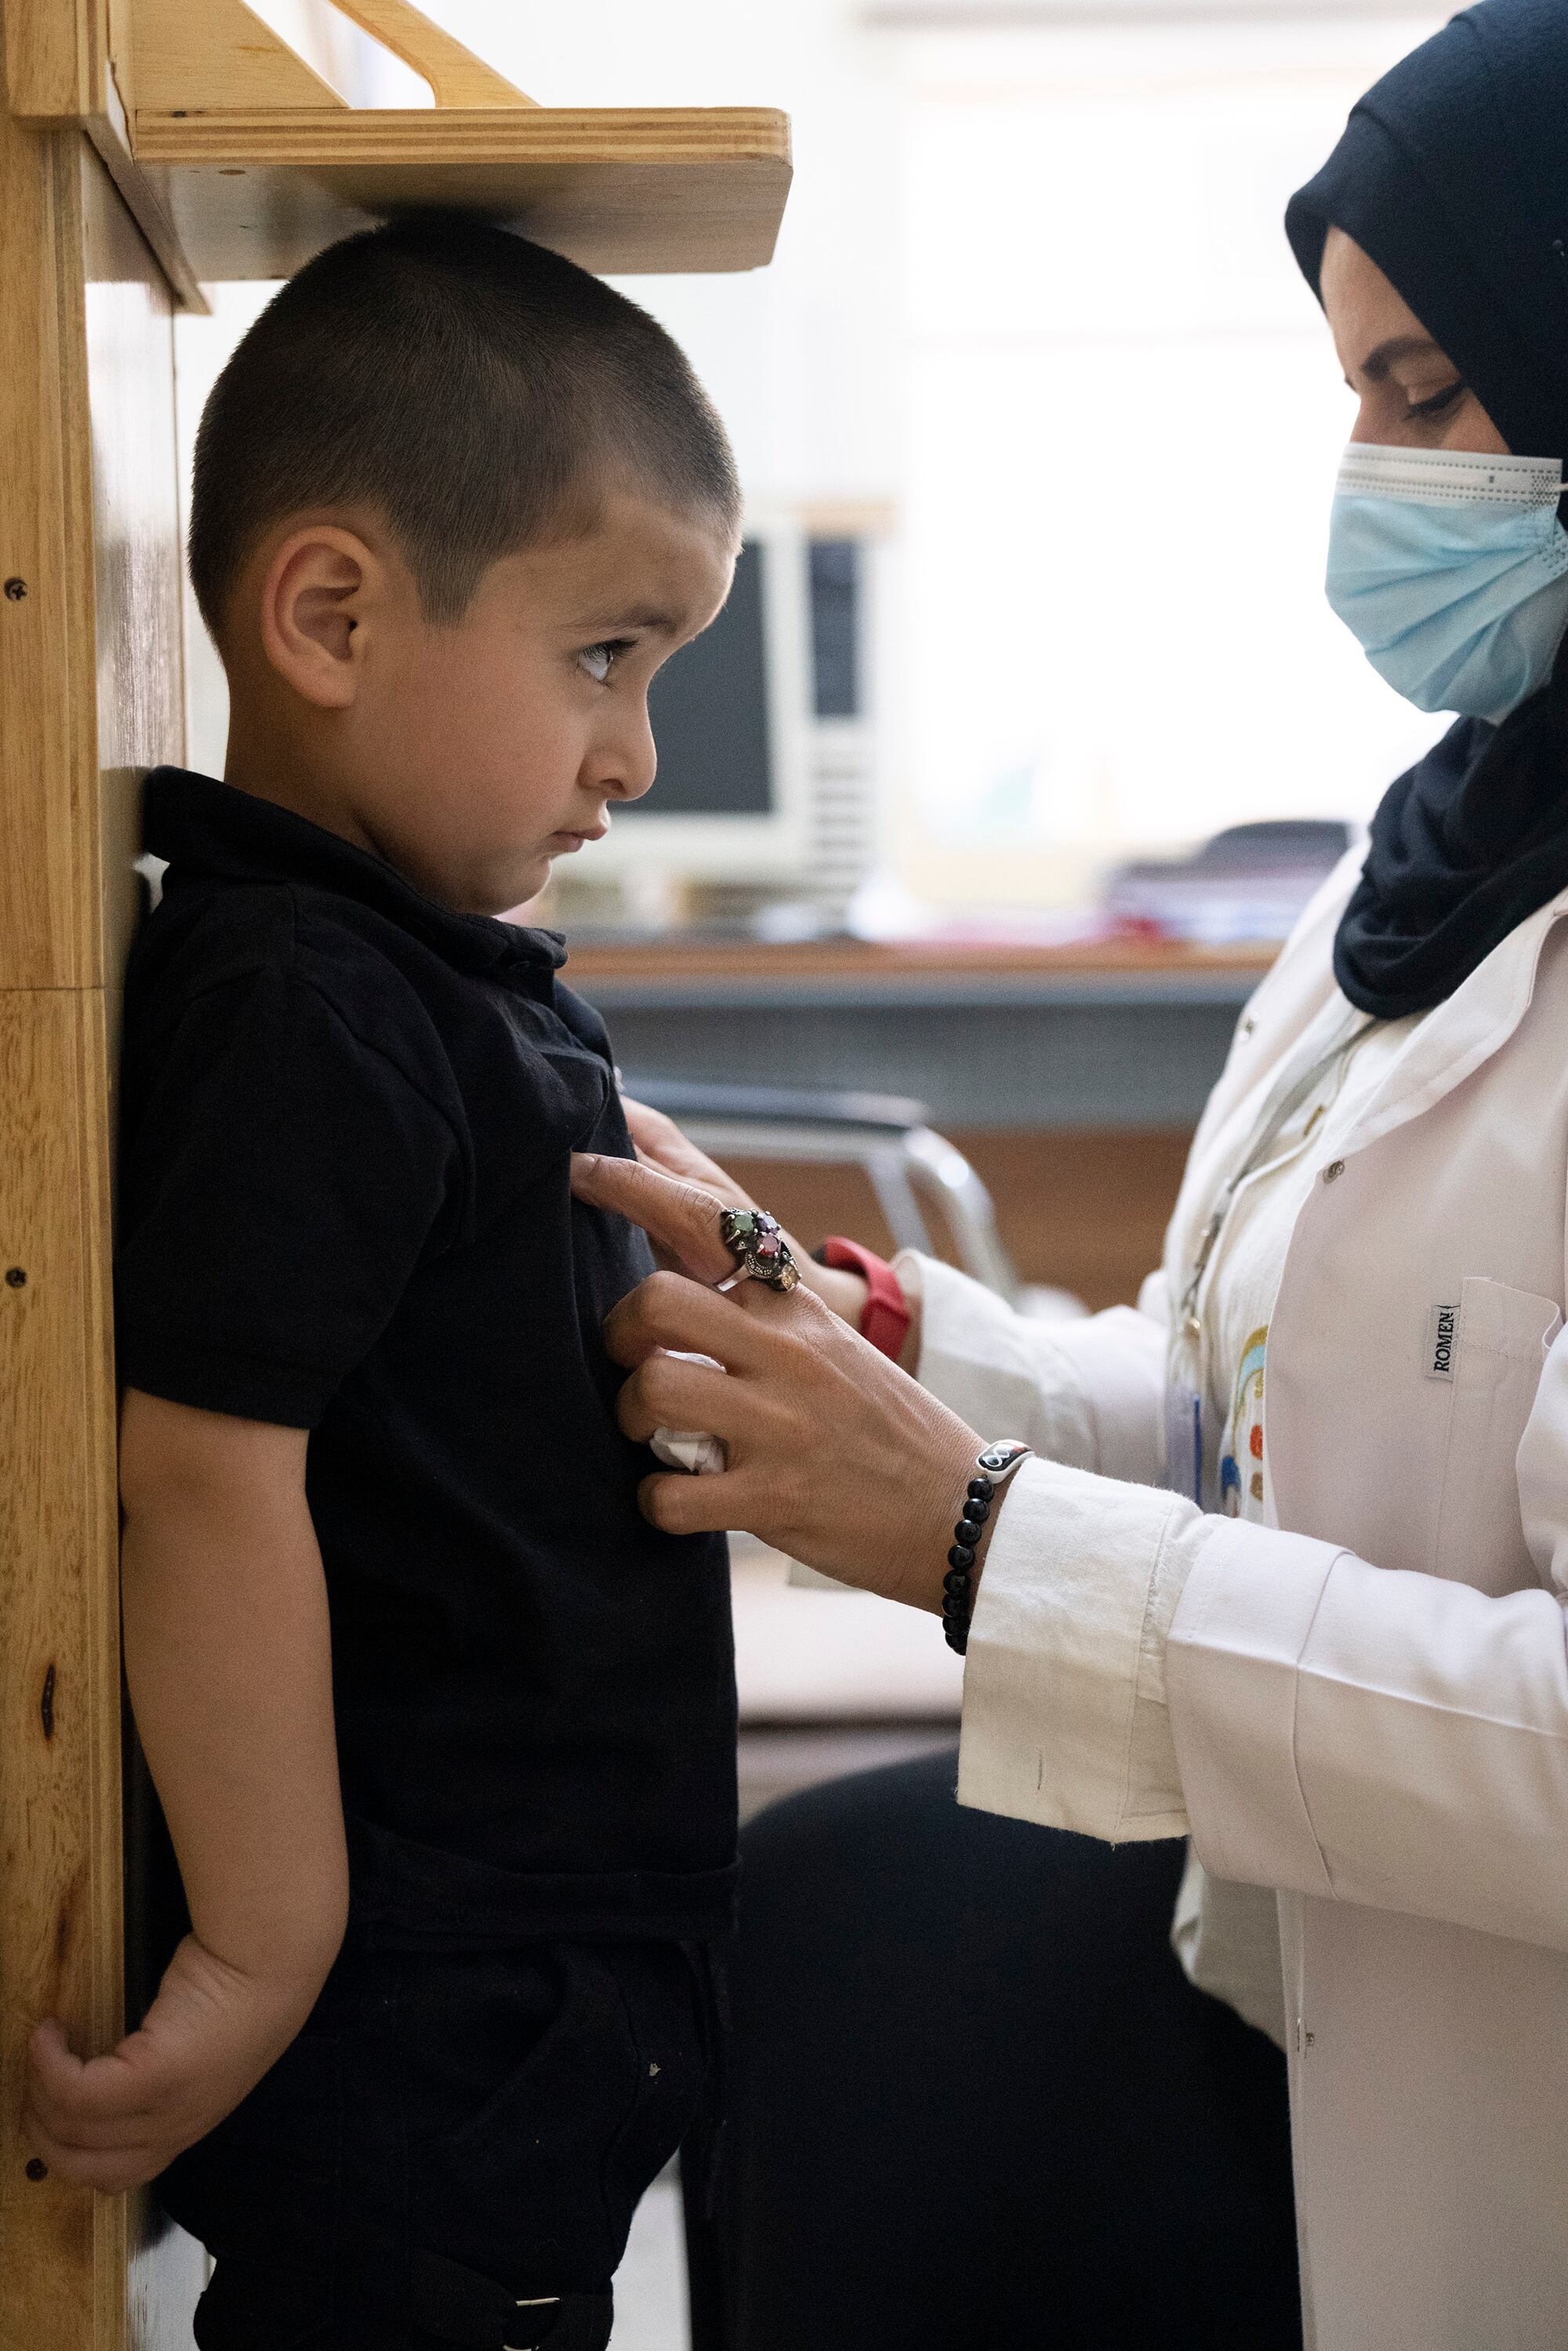 El ambulatorio Al Quds, en Mosul, intenta cubrir las carencias de una sanidad destrozada. Unicef trabaja aquí en inmunización y nutrición infantil.